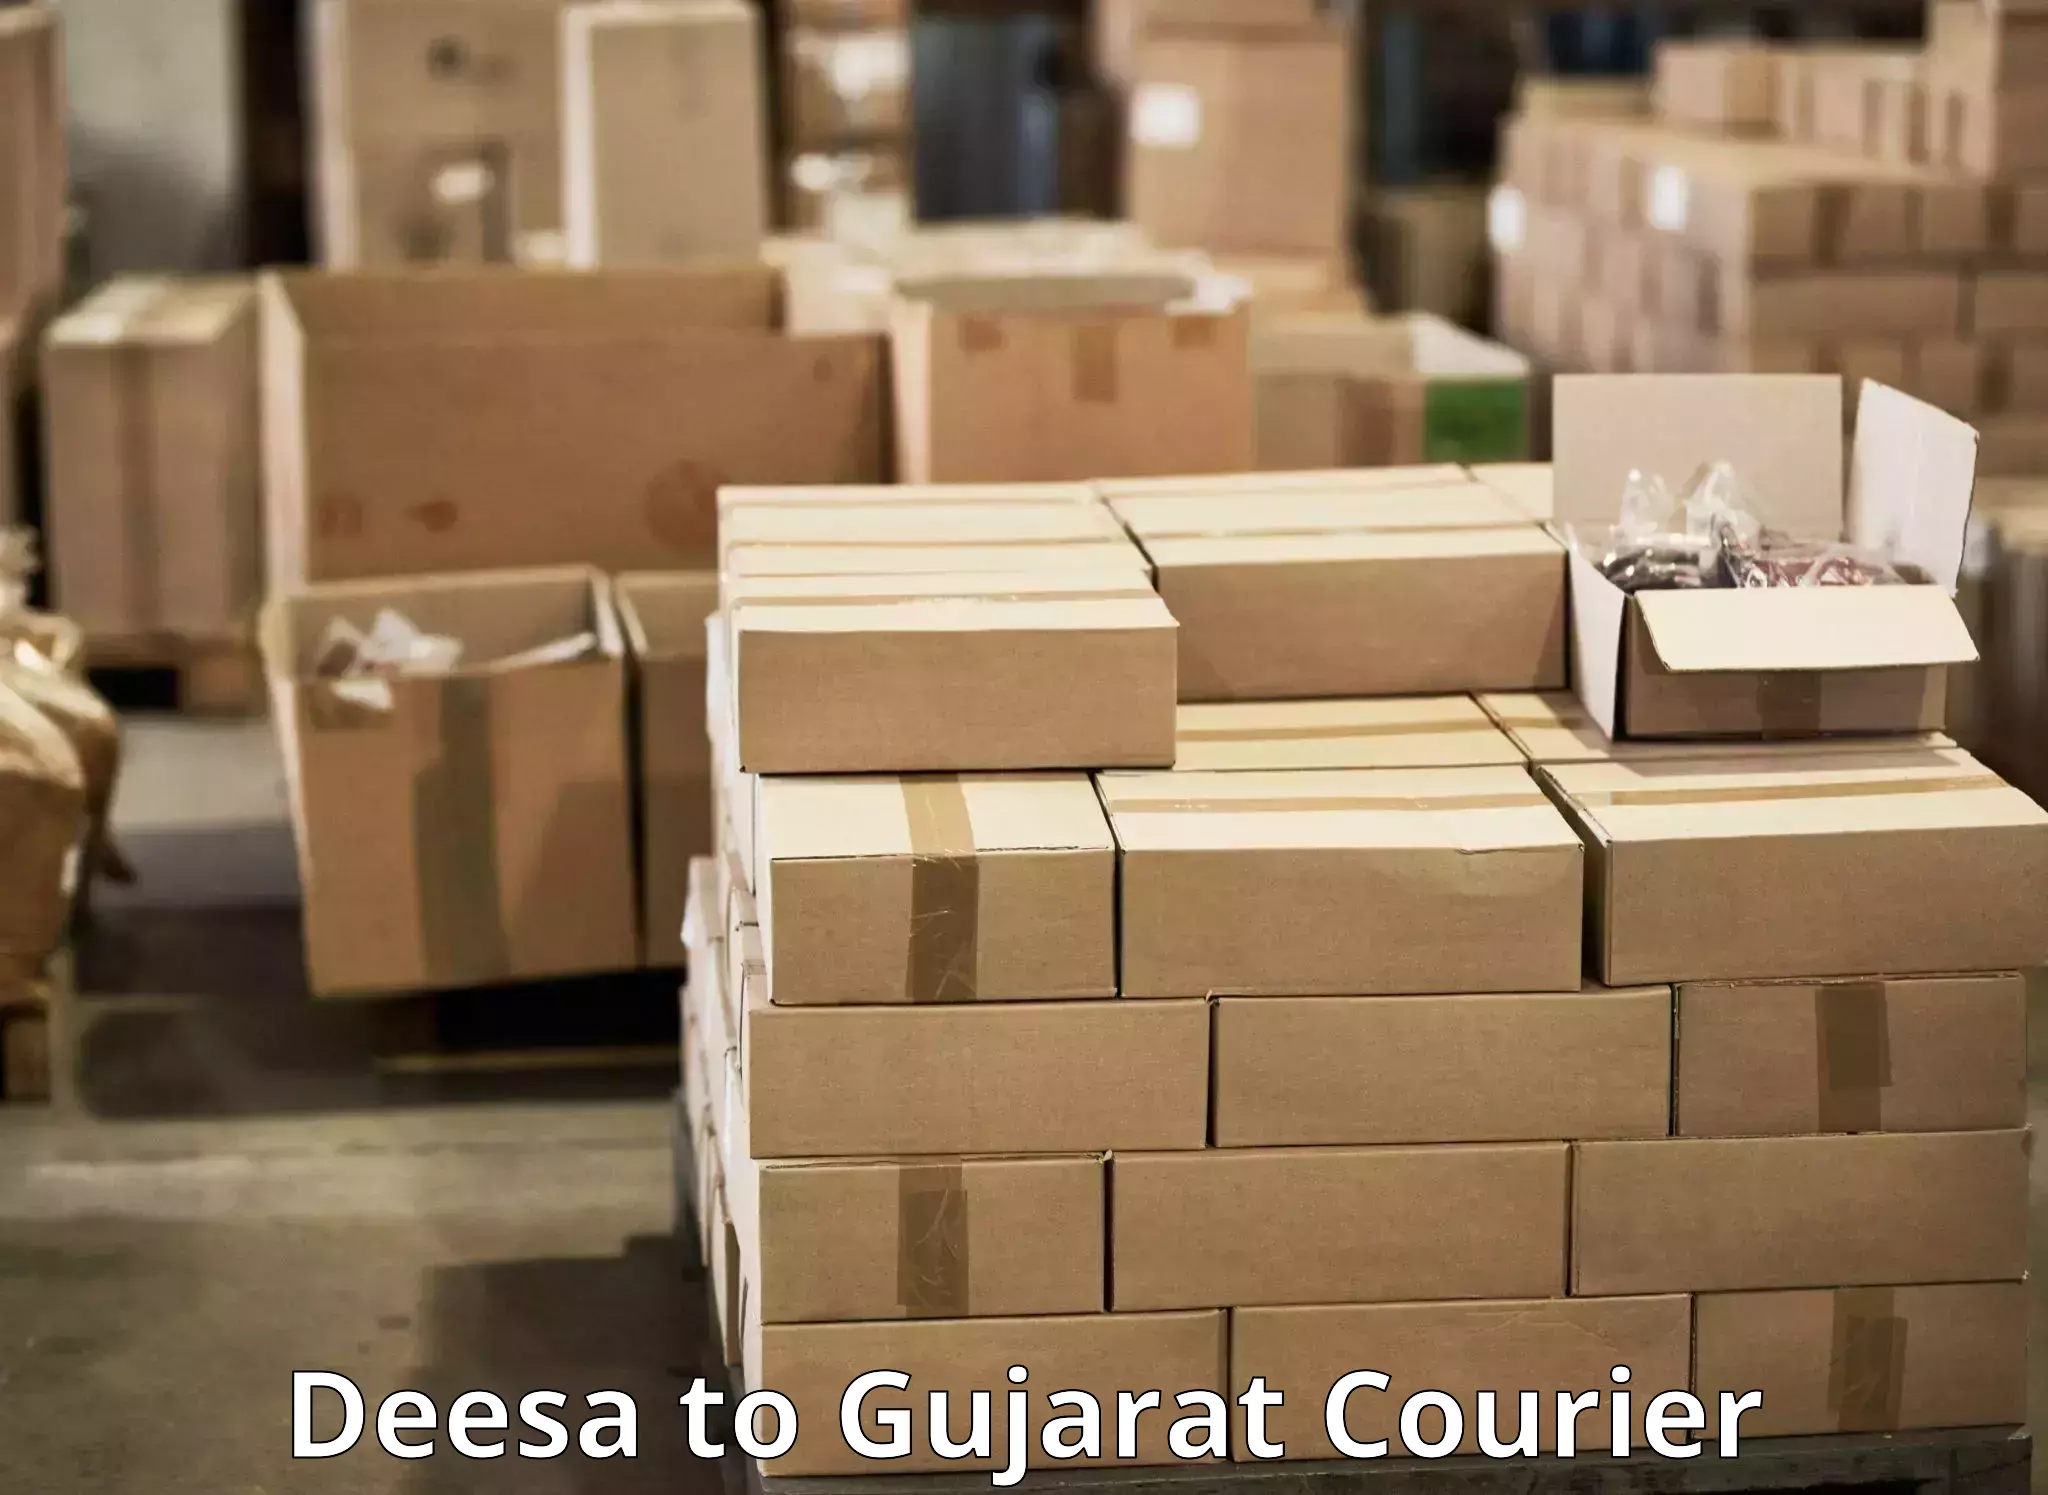 Urgent courier needs Deesa to Godhra